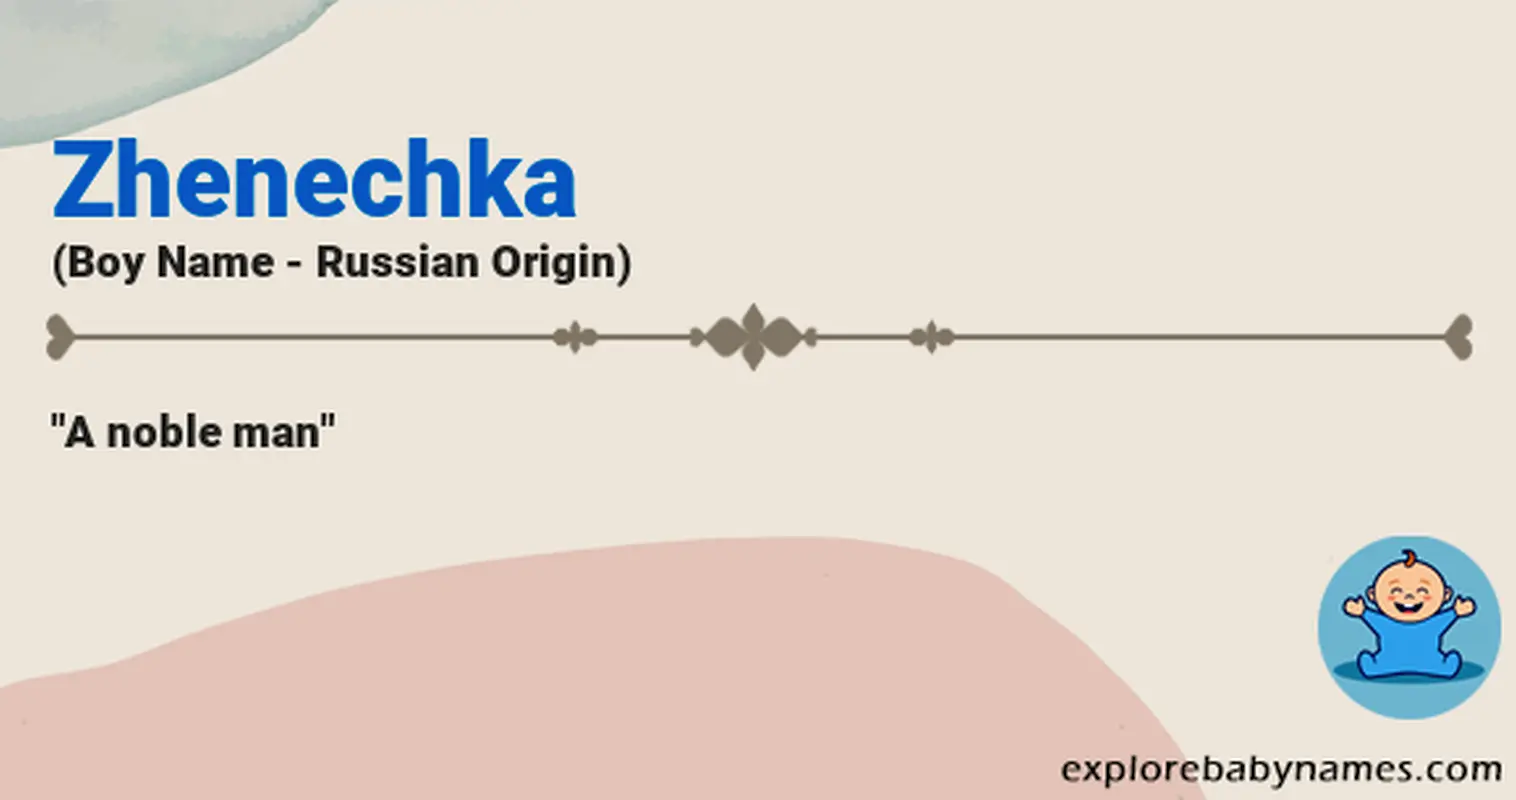 Meaning of Zhenechka